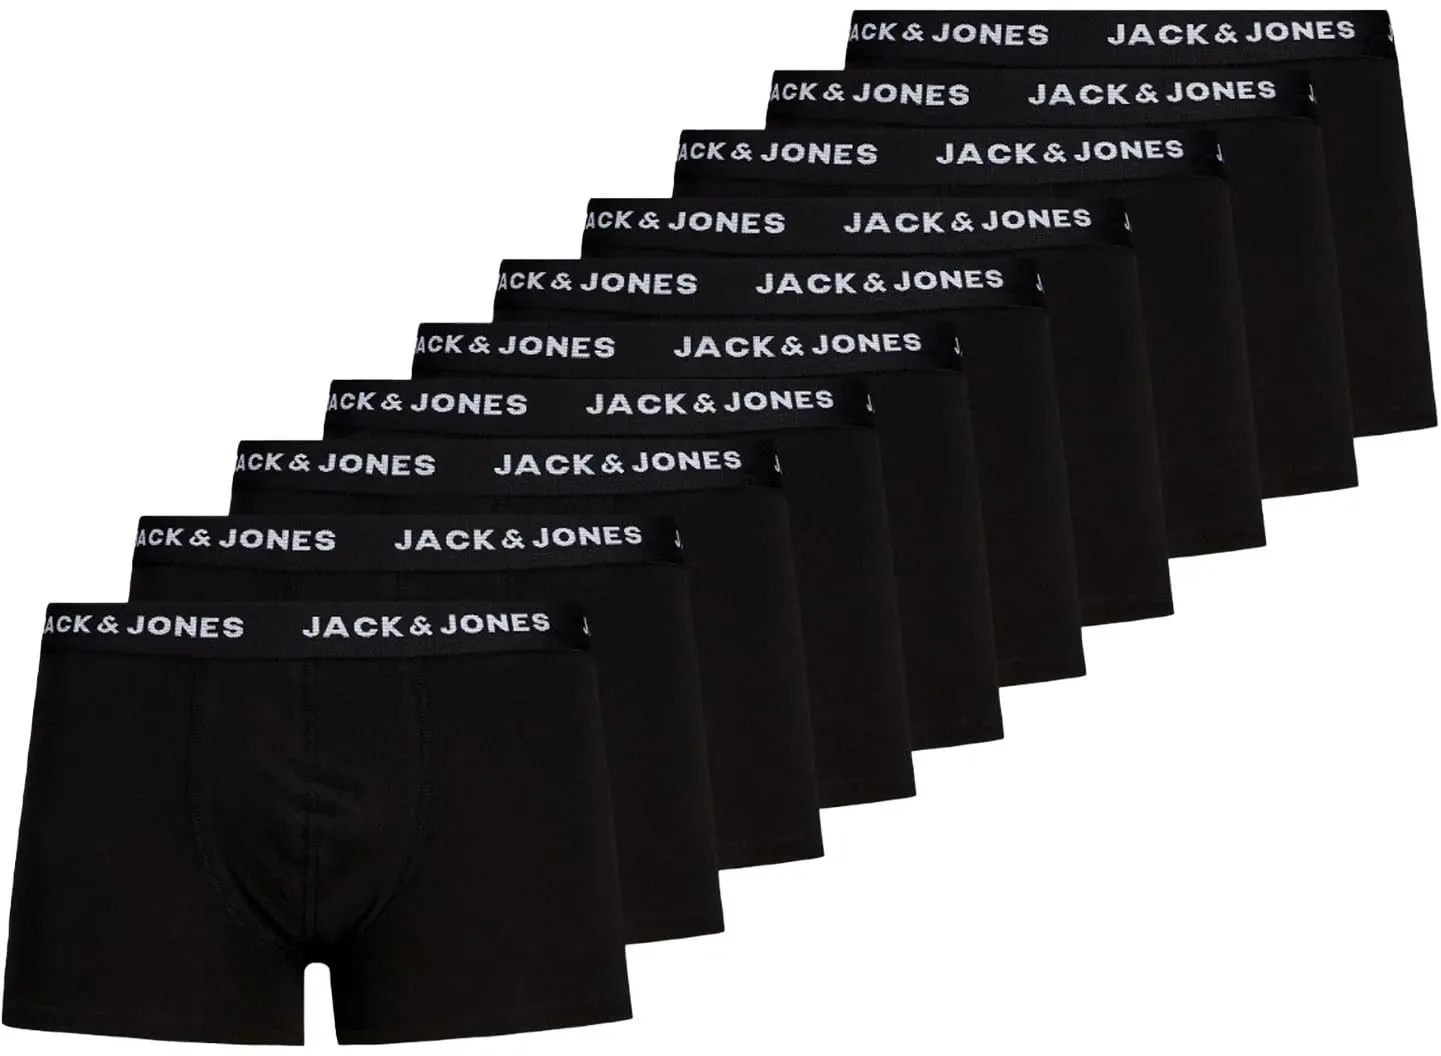 Jack & Jones Herren Jacsolid Trunks 10 Packs Boxershorts, Schwarz, M EU